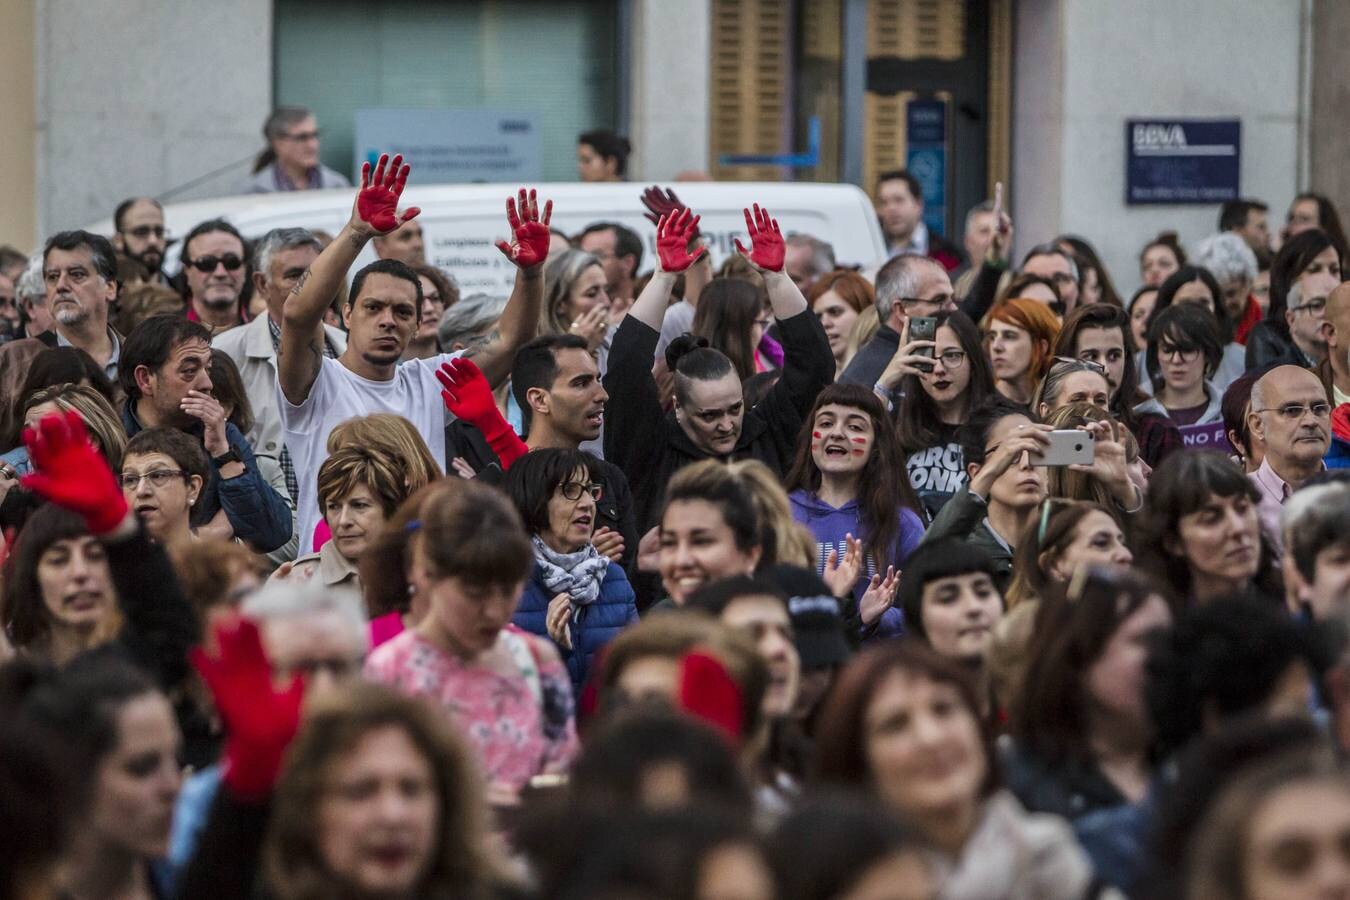 Fotos: Logroño clama contra la decisión sobre &#039;la manada&#039;